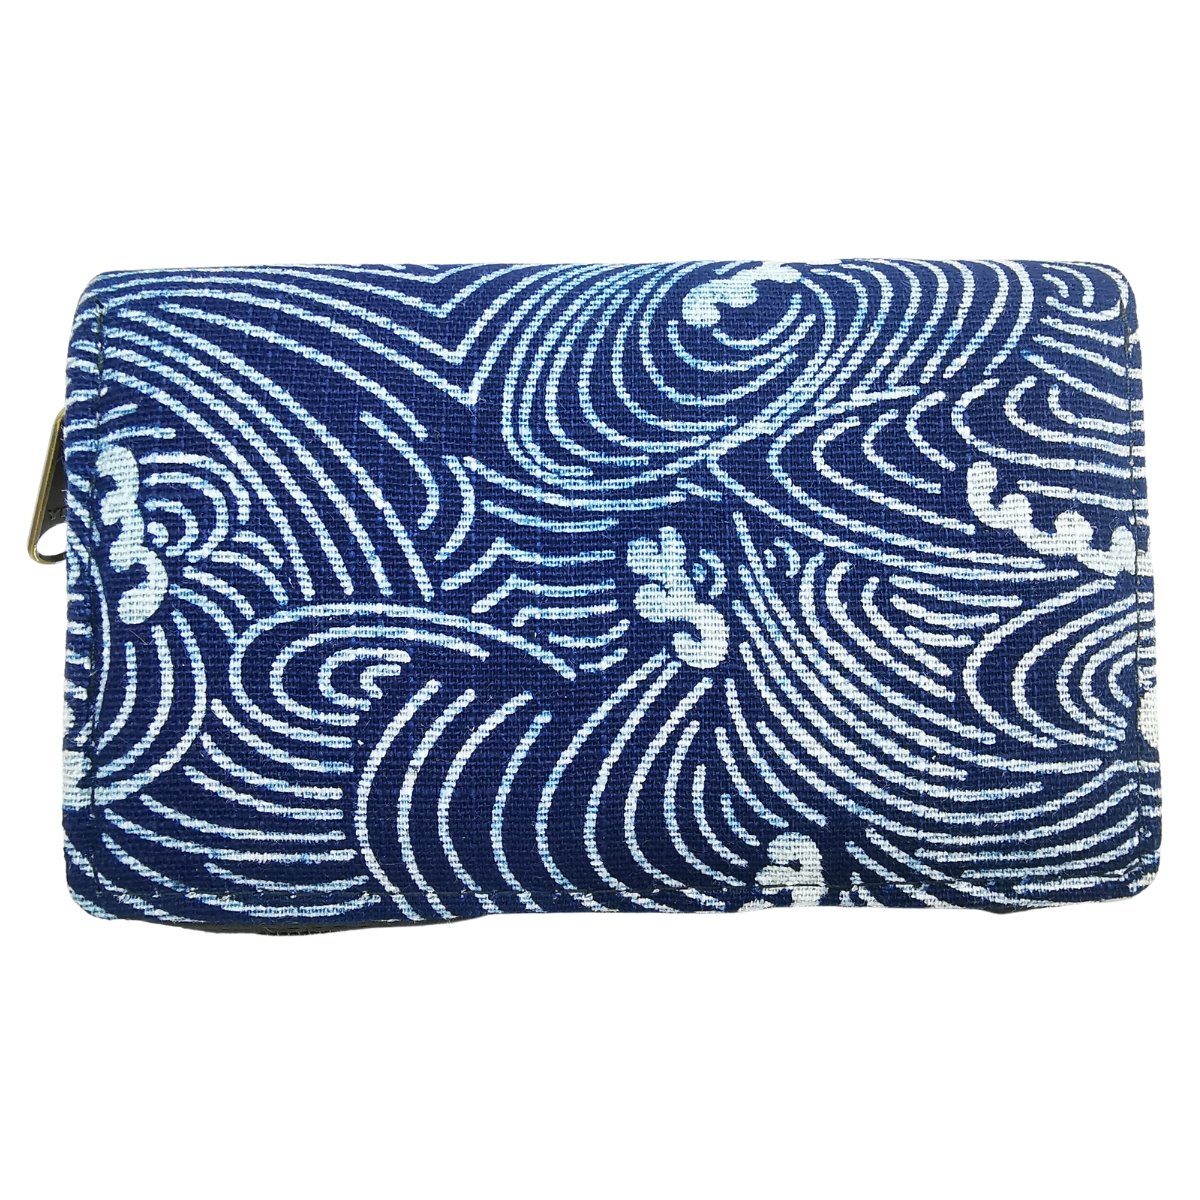 PANASIAM Geldbörse Portemonnaie indigo Brieftasche Geldbörse in 2 Größen vegan, fair produziert mit Münzfach Reißverschluß und Kartenfächern Ocean